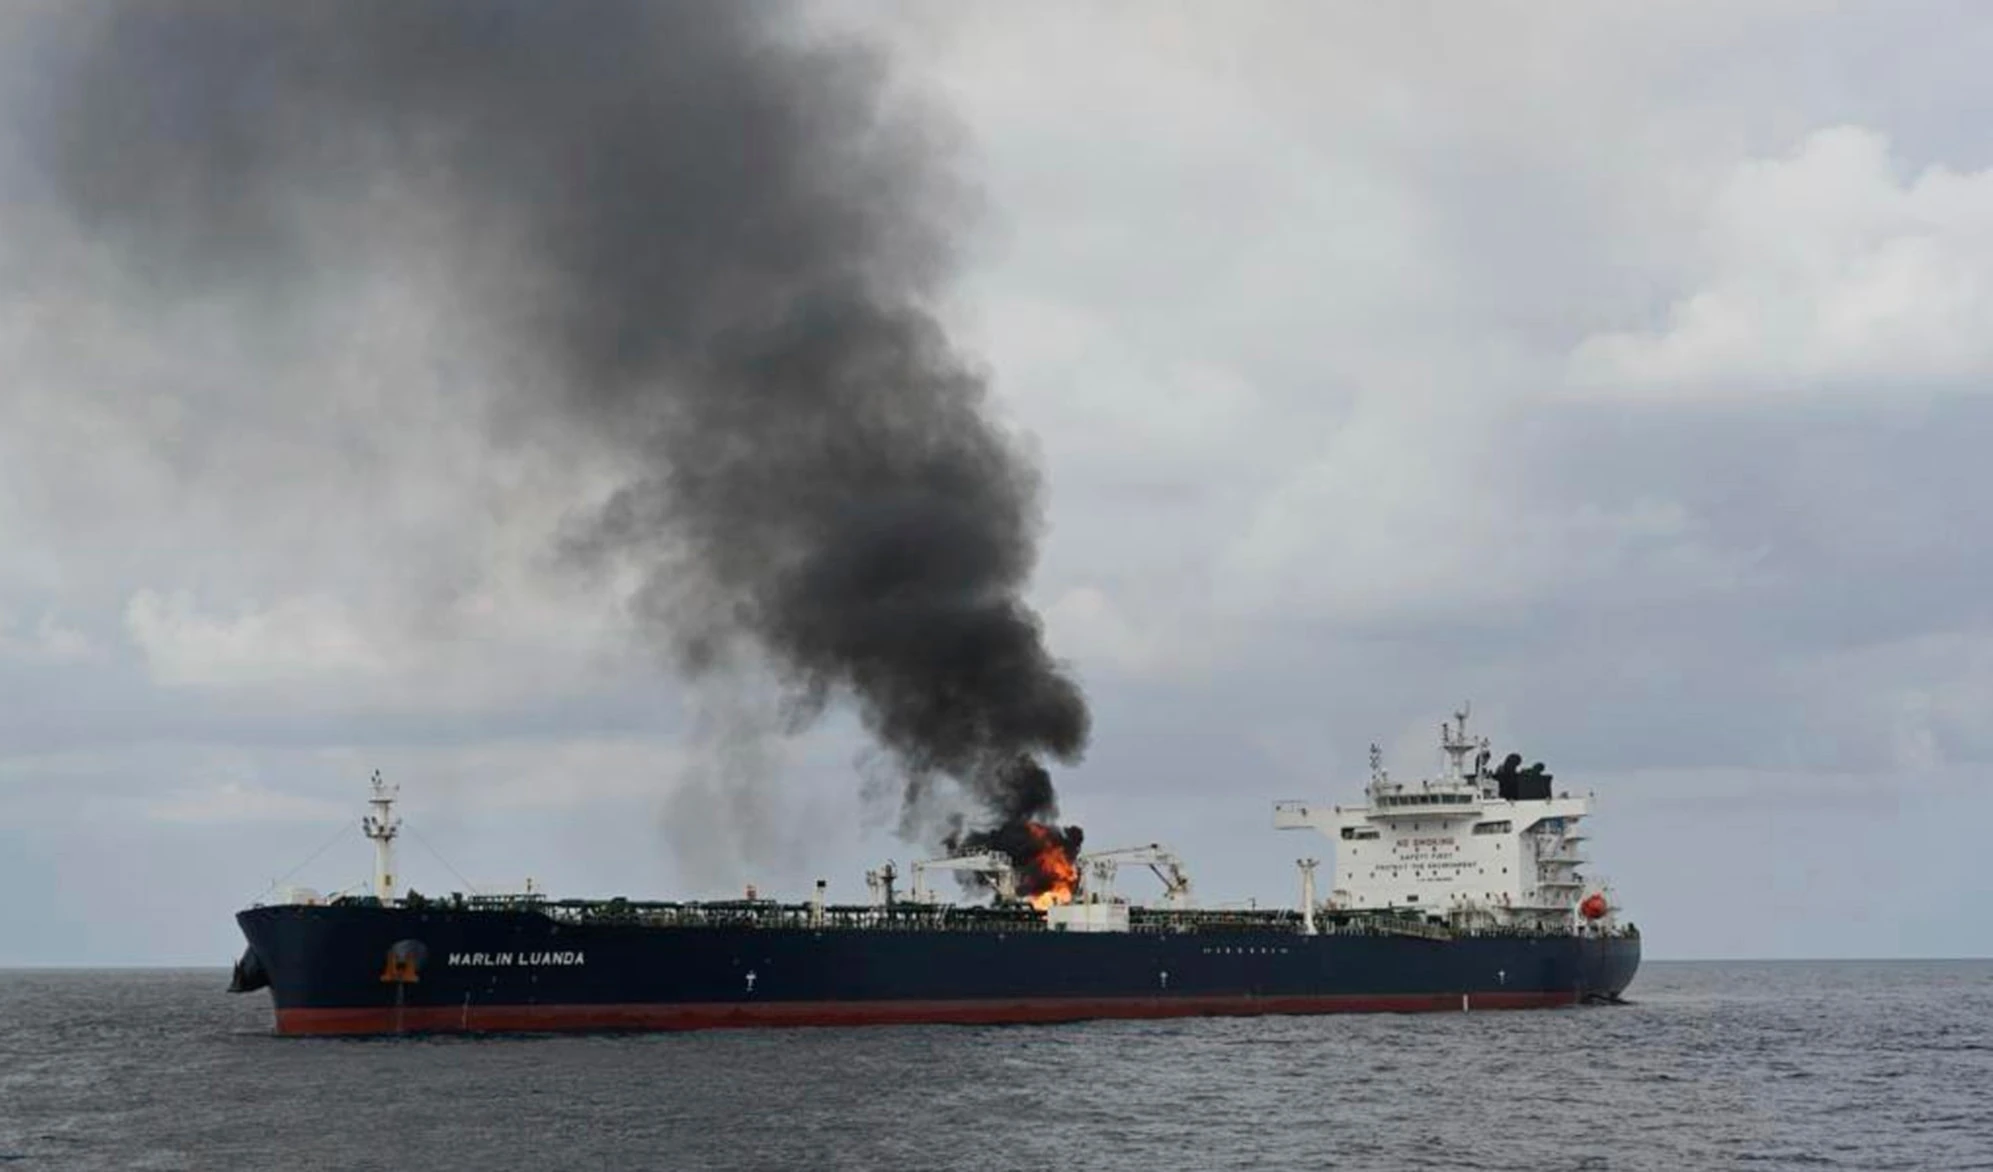 Las tropas navales yhemenitas atacaron al petrolero británico "Marlin Luanda" en el golfo de Adén y lo incendiaron.